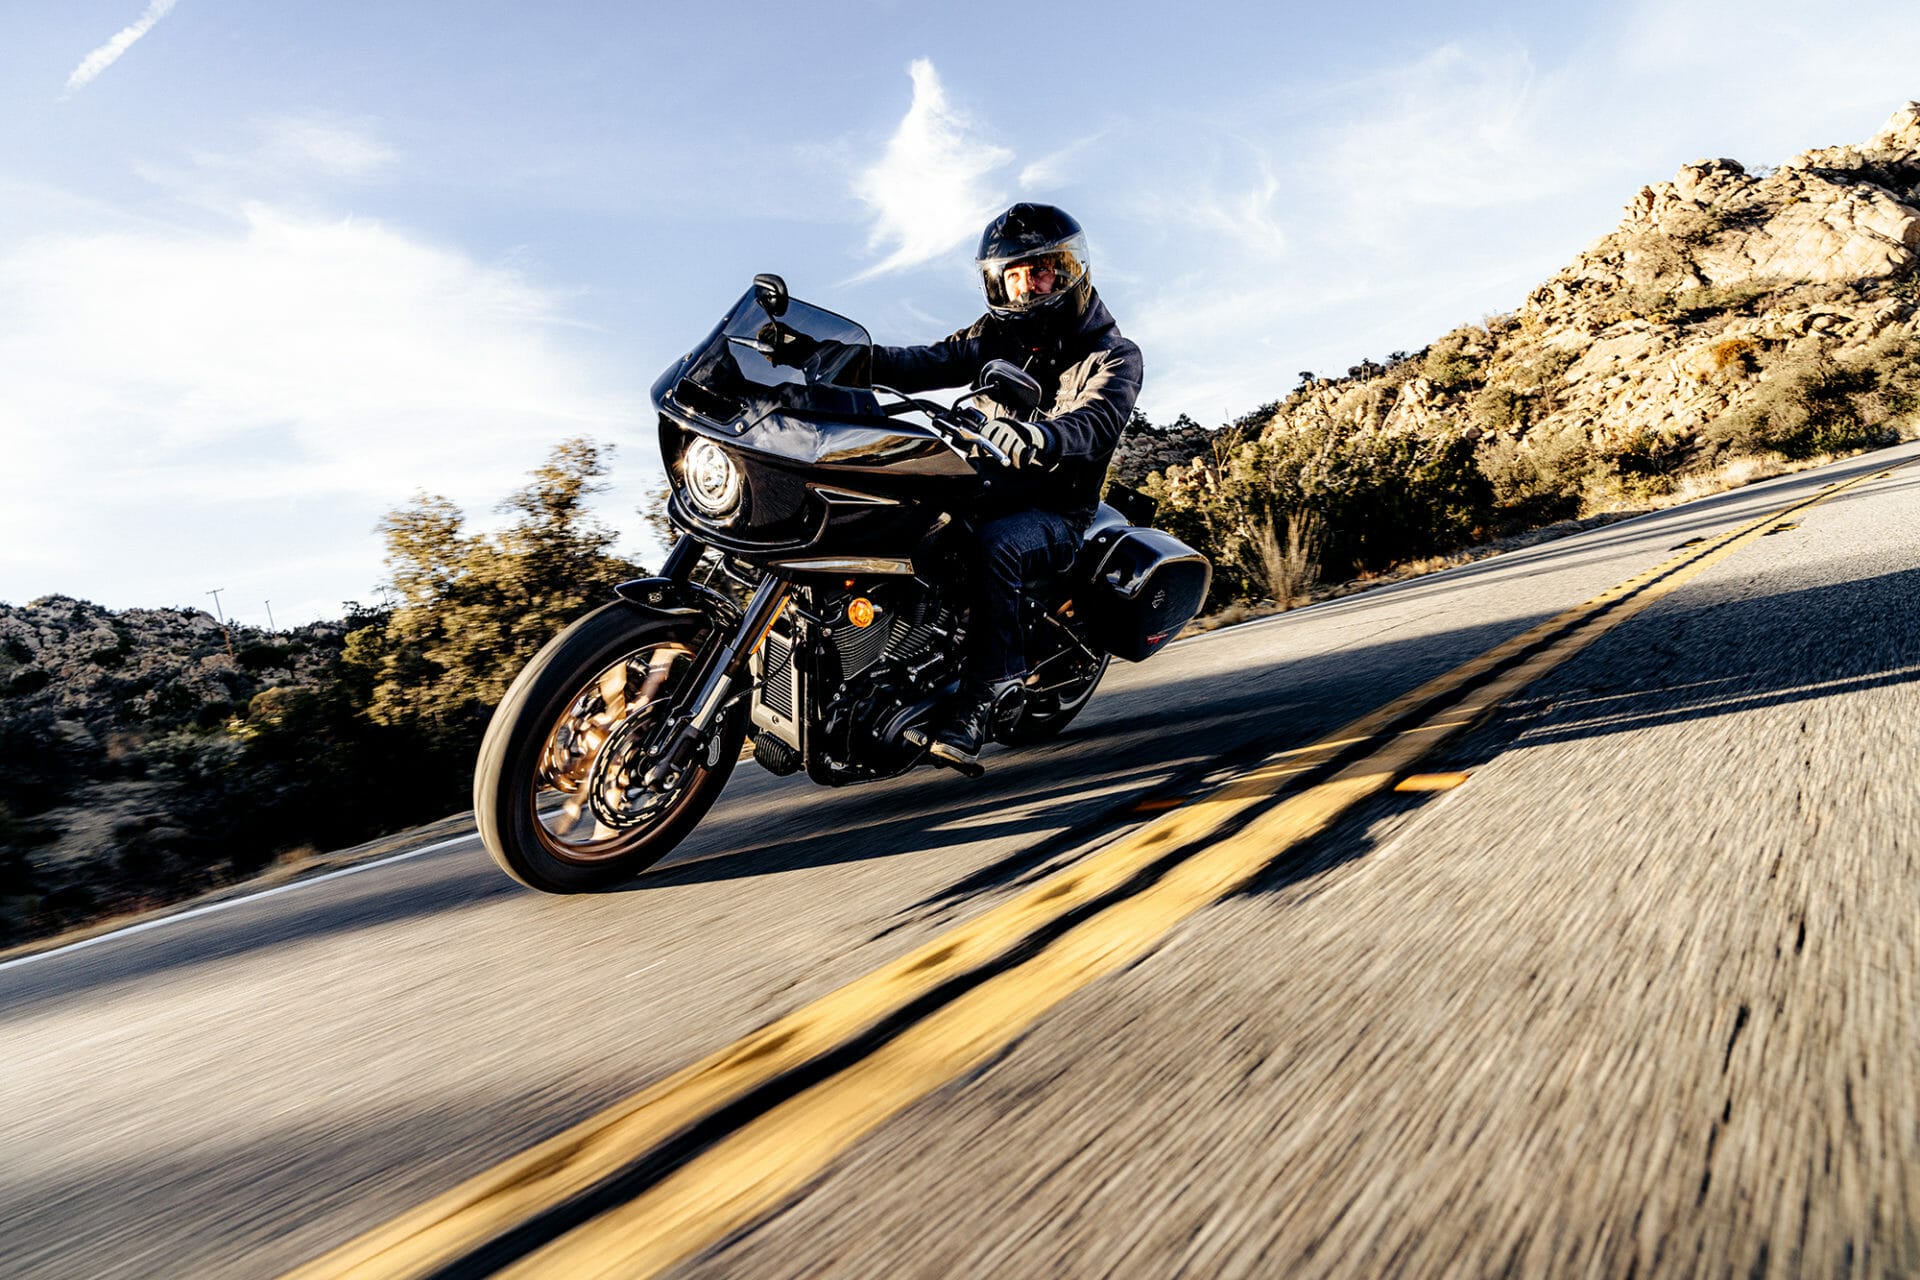 Neu: Harley-Davidson Low Rider S und Low Rider ST 2022
- auch in der MOTORRAD NACHRICHTEN APP